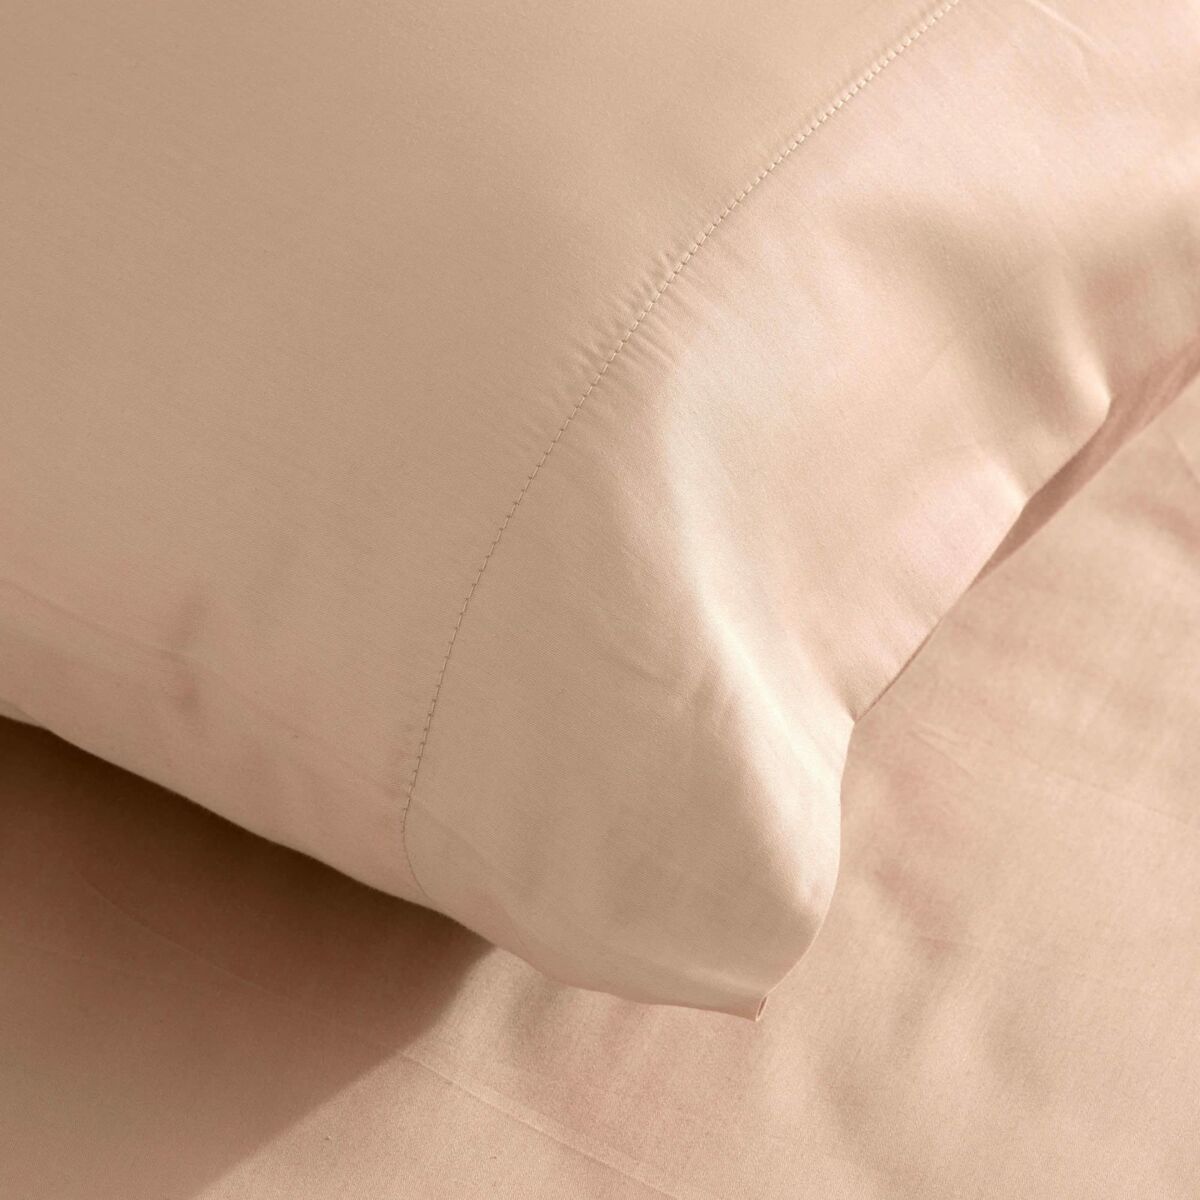 Pillowcase SG Hogar Pink 45 x 125 cm